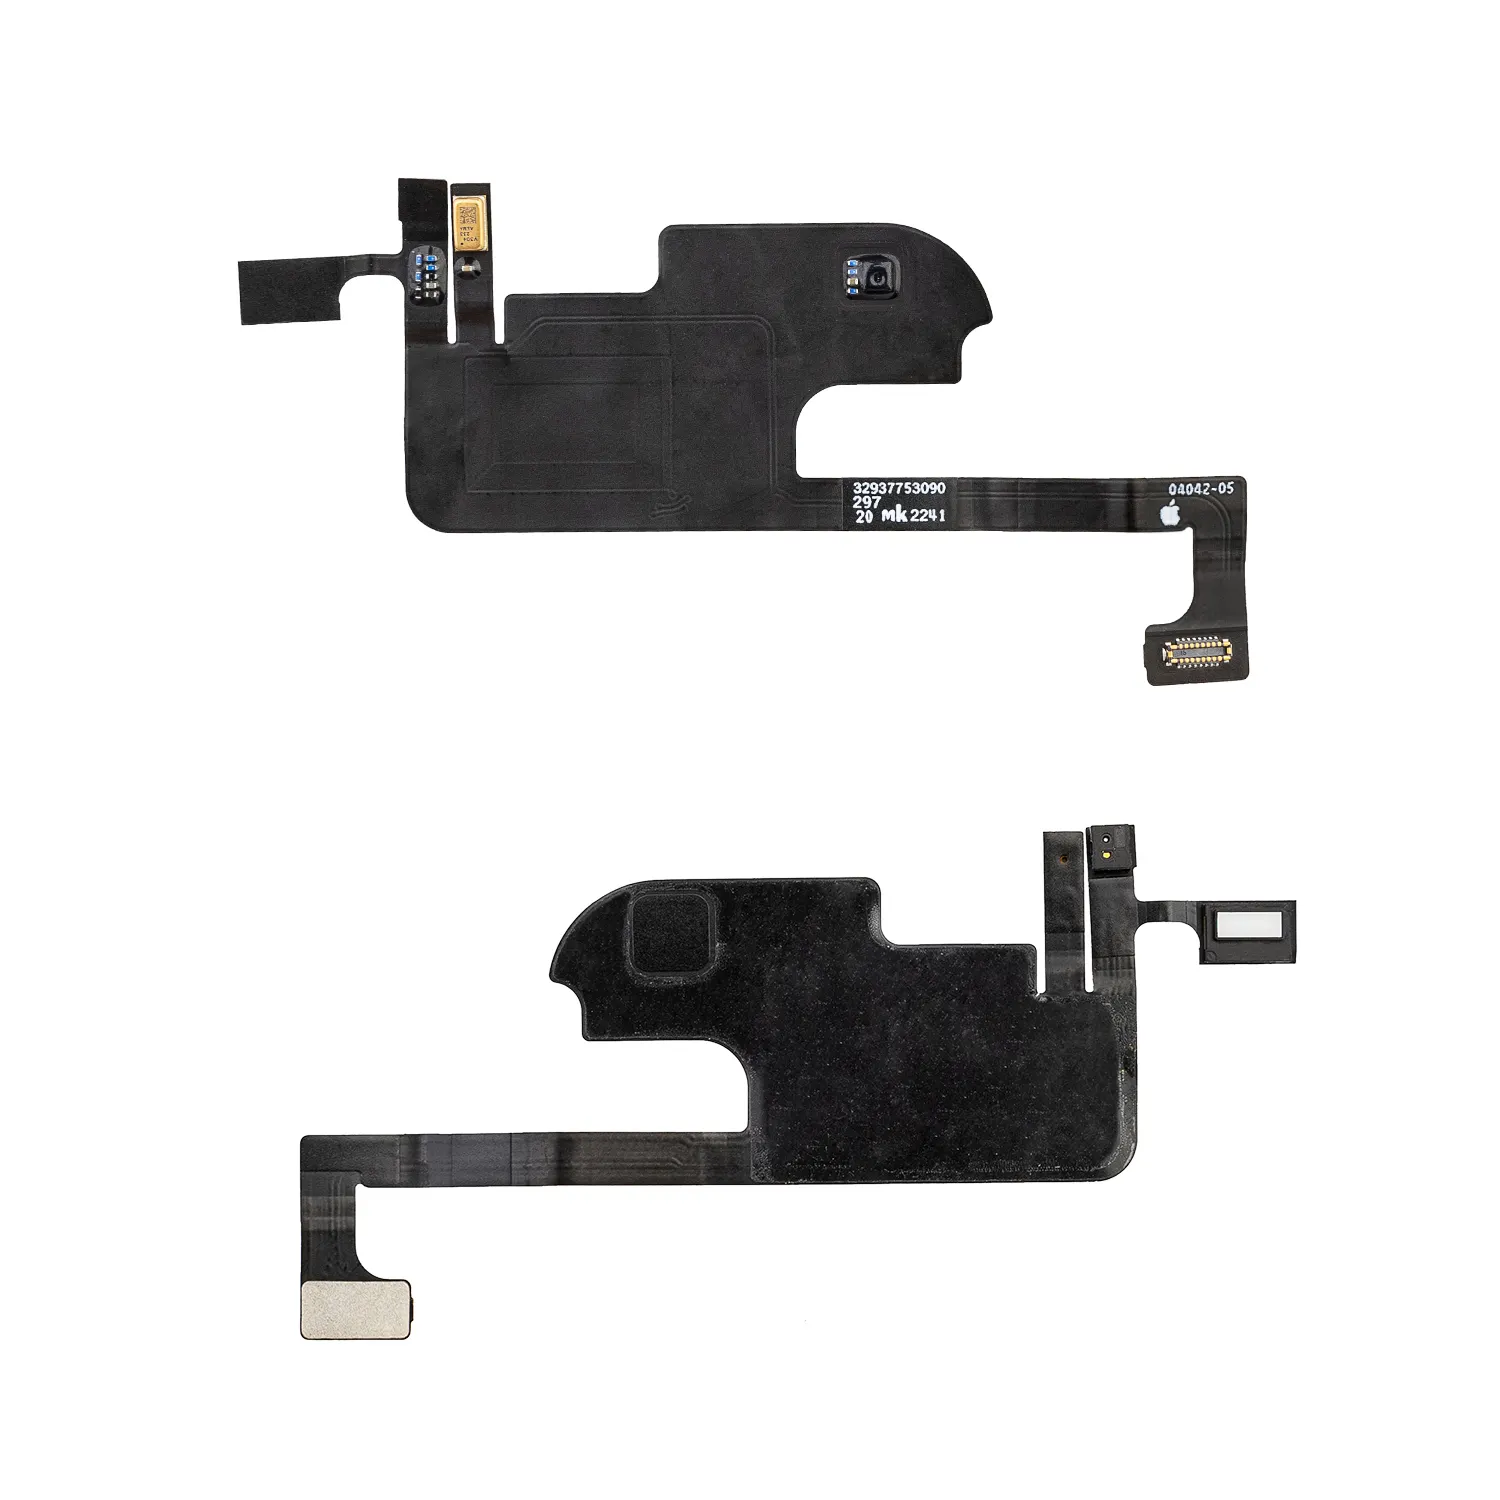 Feaglet marka cep telefonu kamera parçaları ve hoparlör aksesuarları için iPhone X Xs XsMax cep